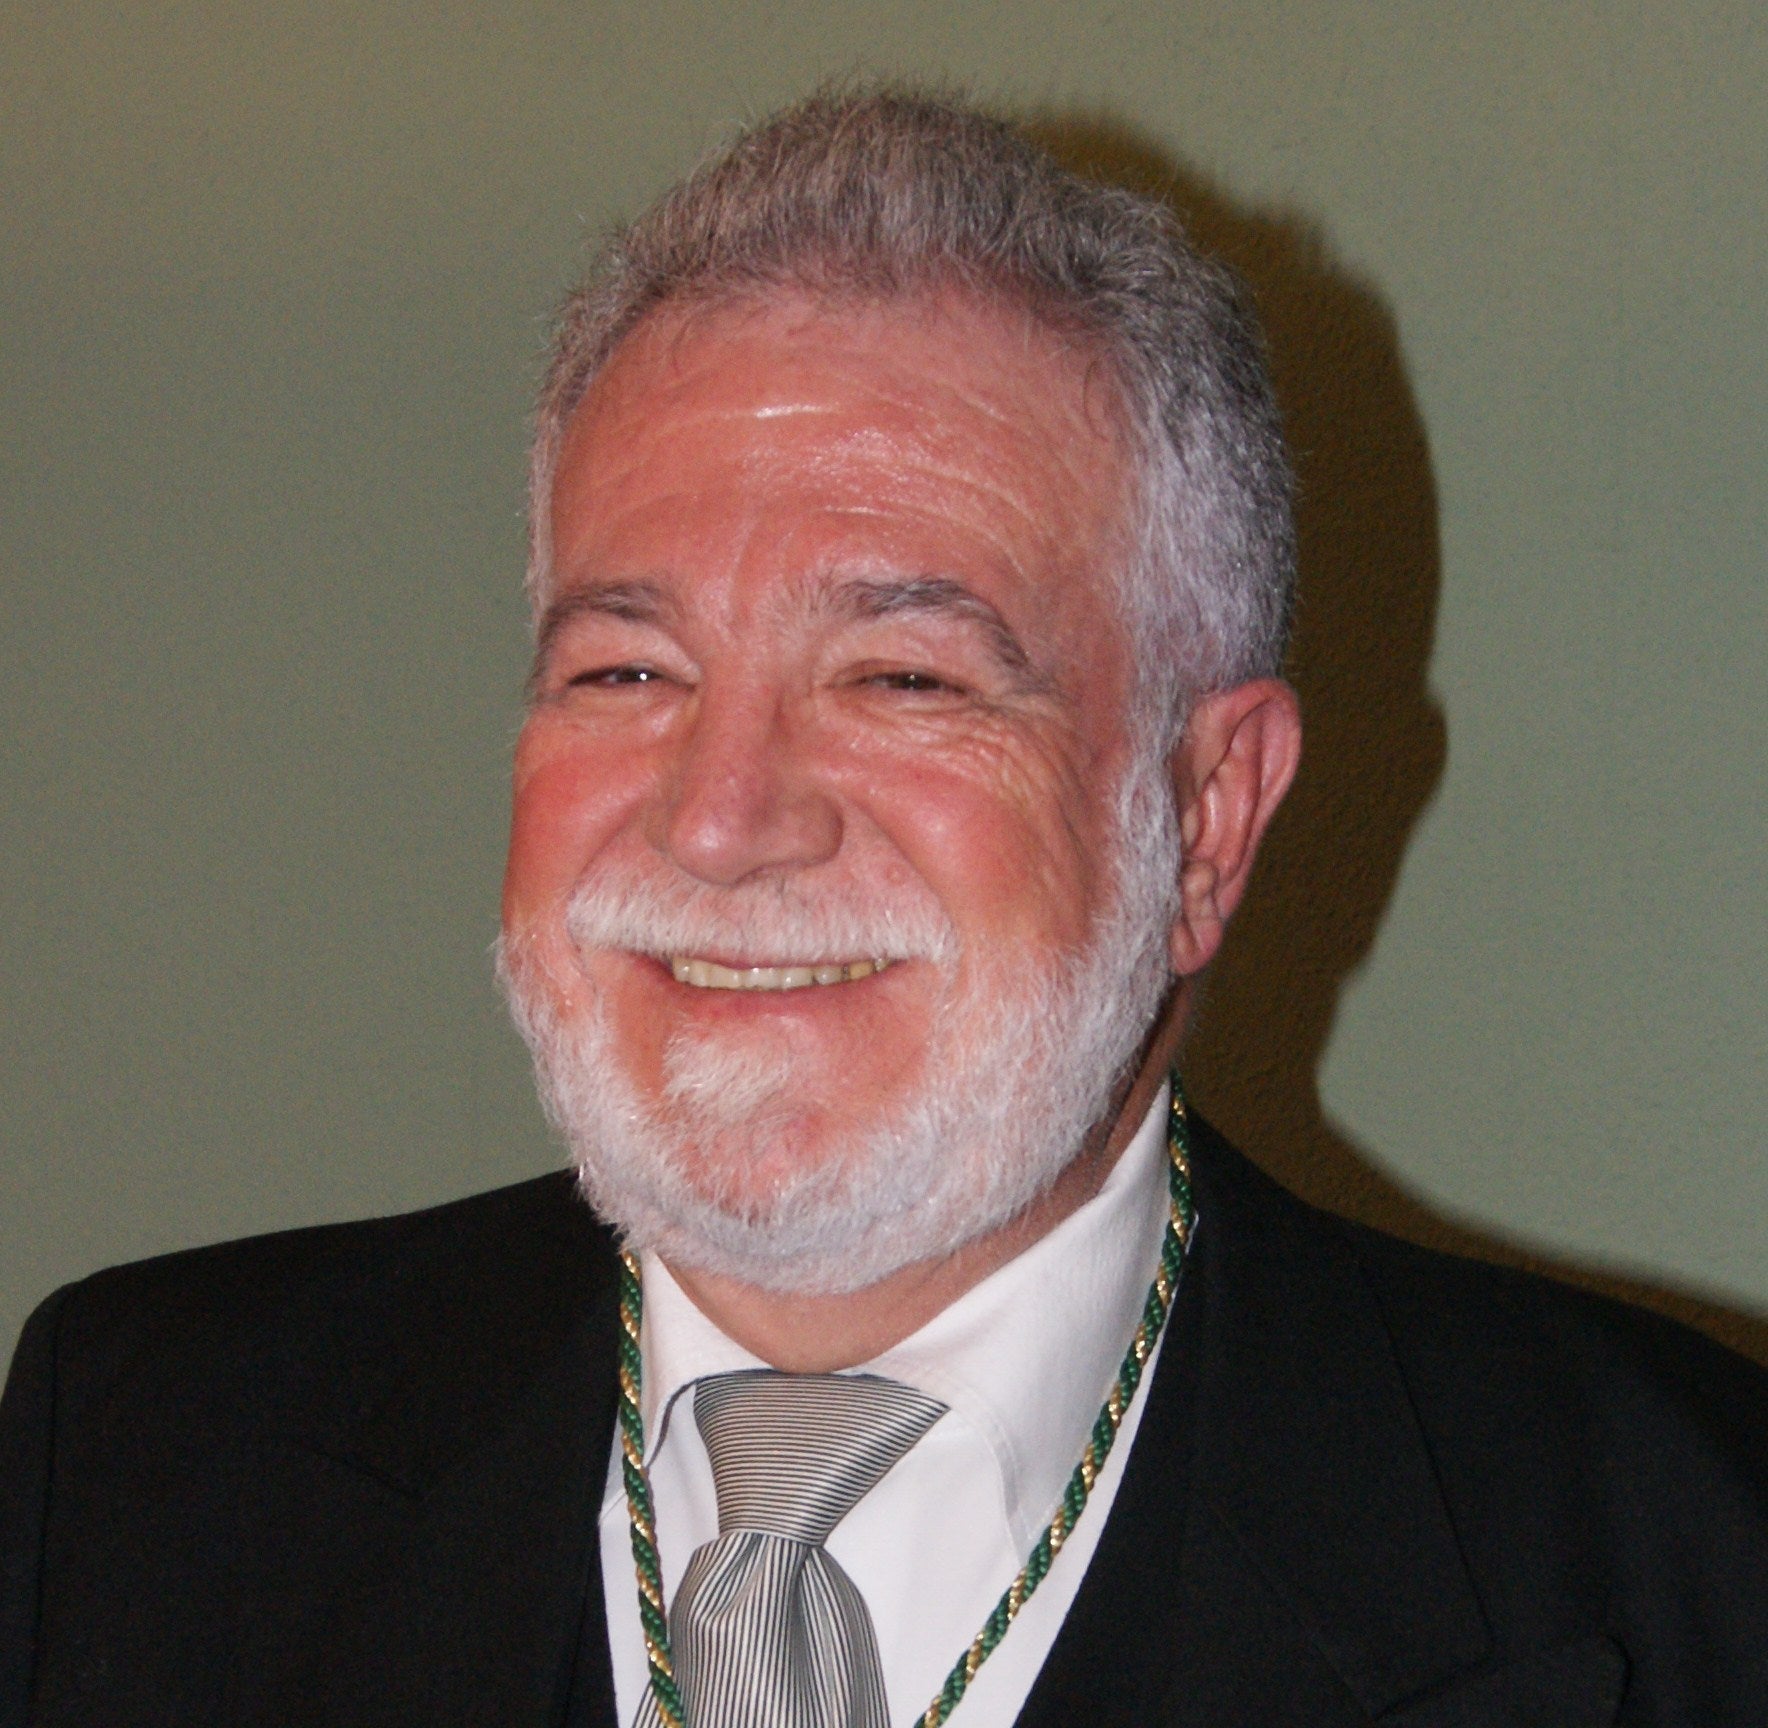 MD. Jesús A. Fernández-Tresguerres